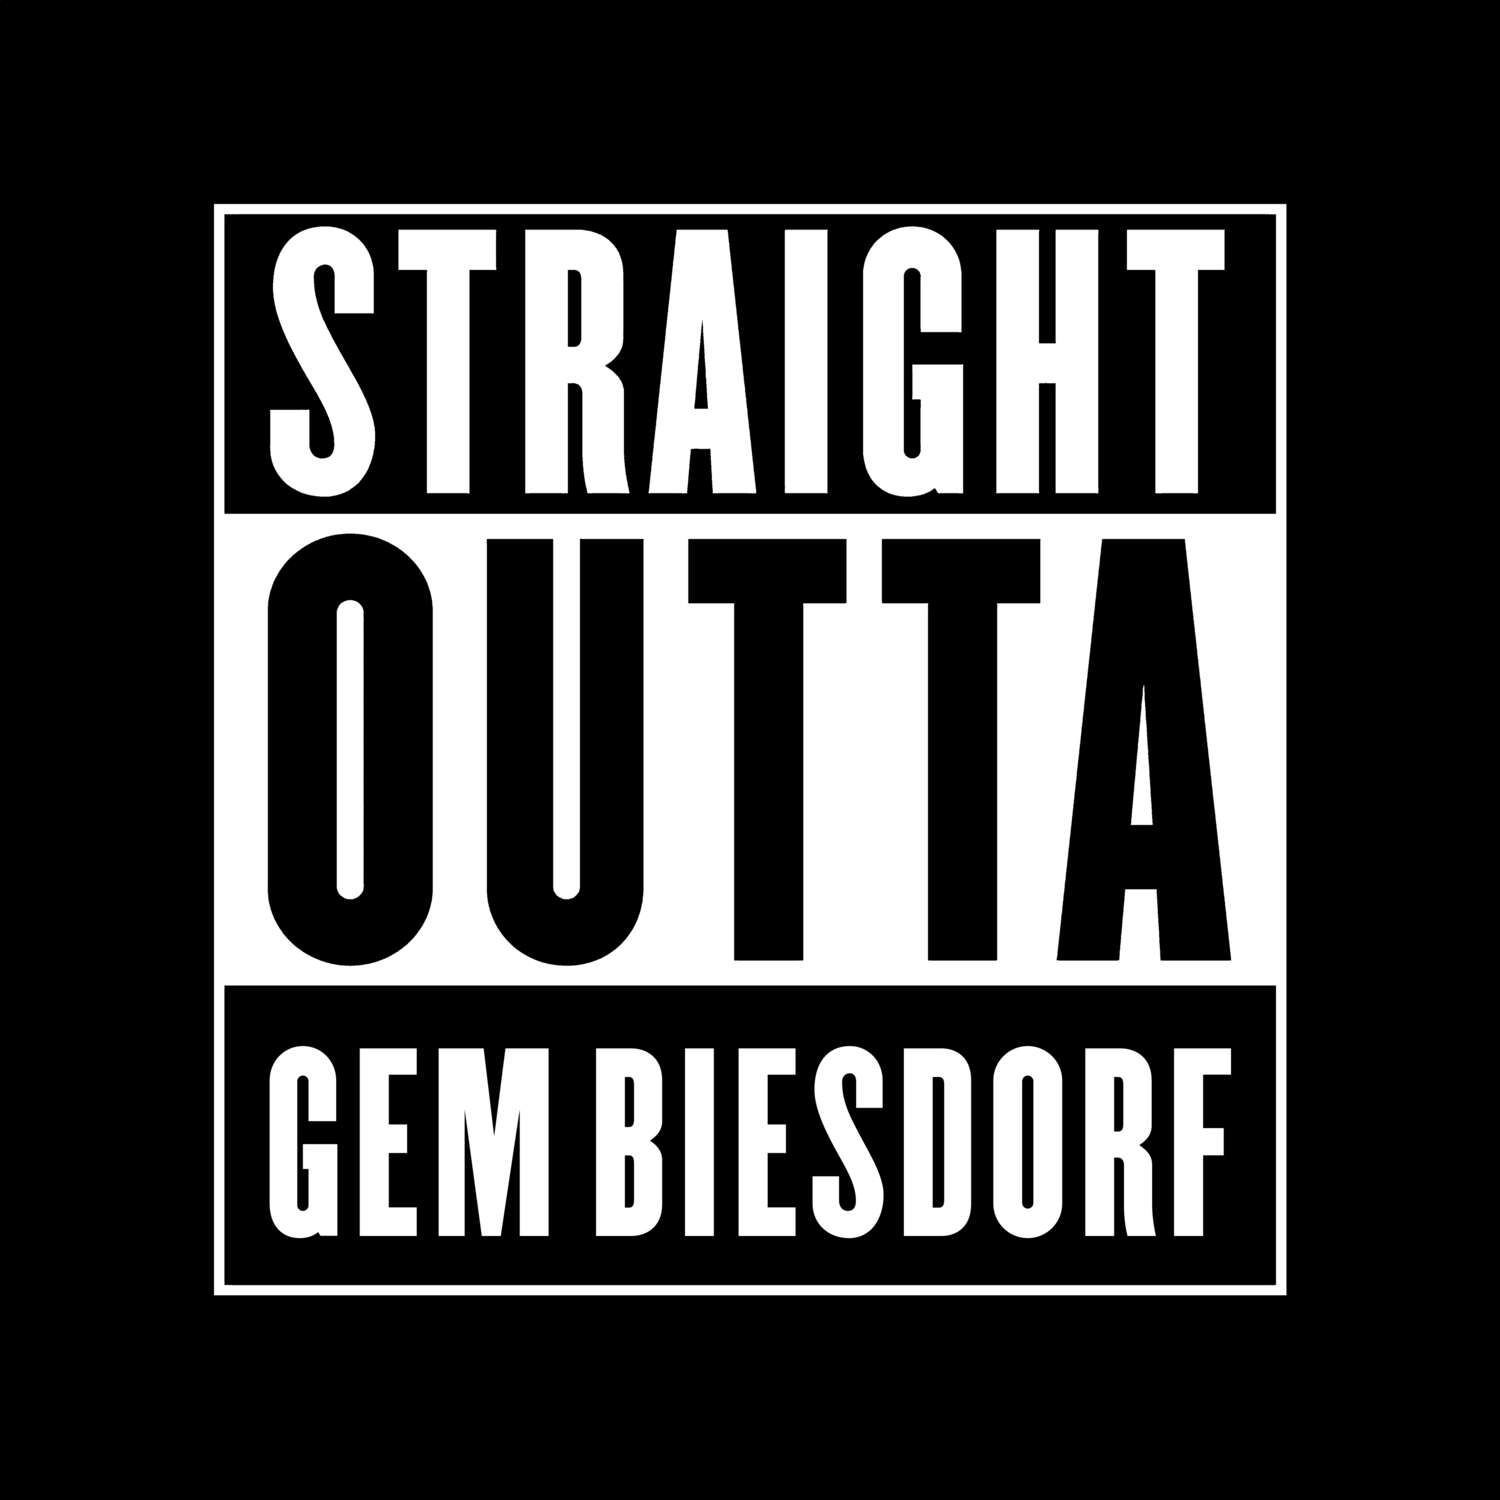 Gem Biesdorf T-Shirt »Straight Outta«